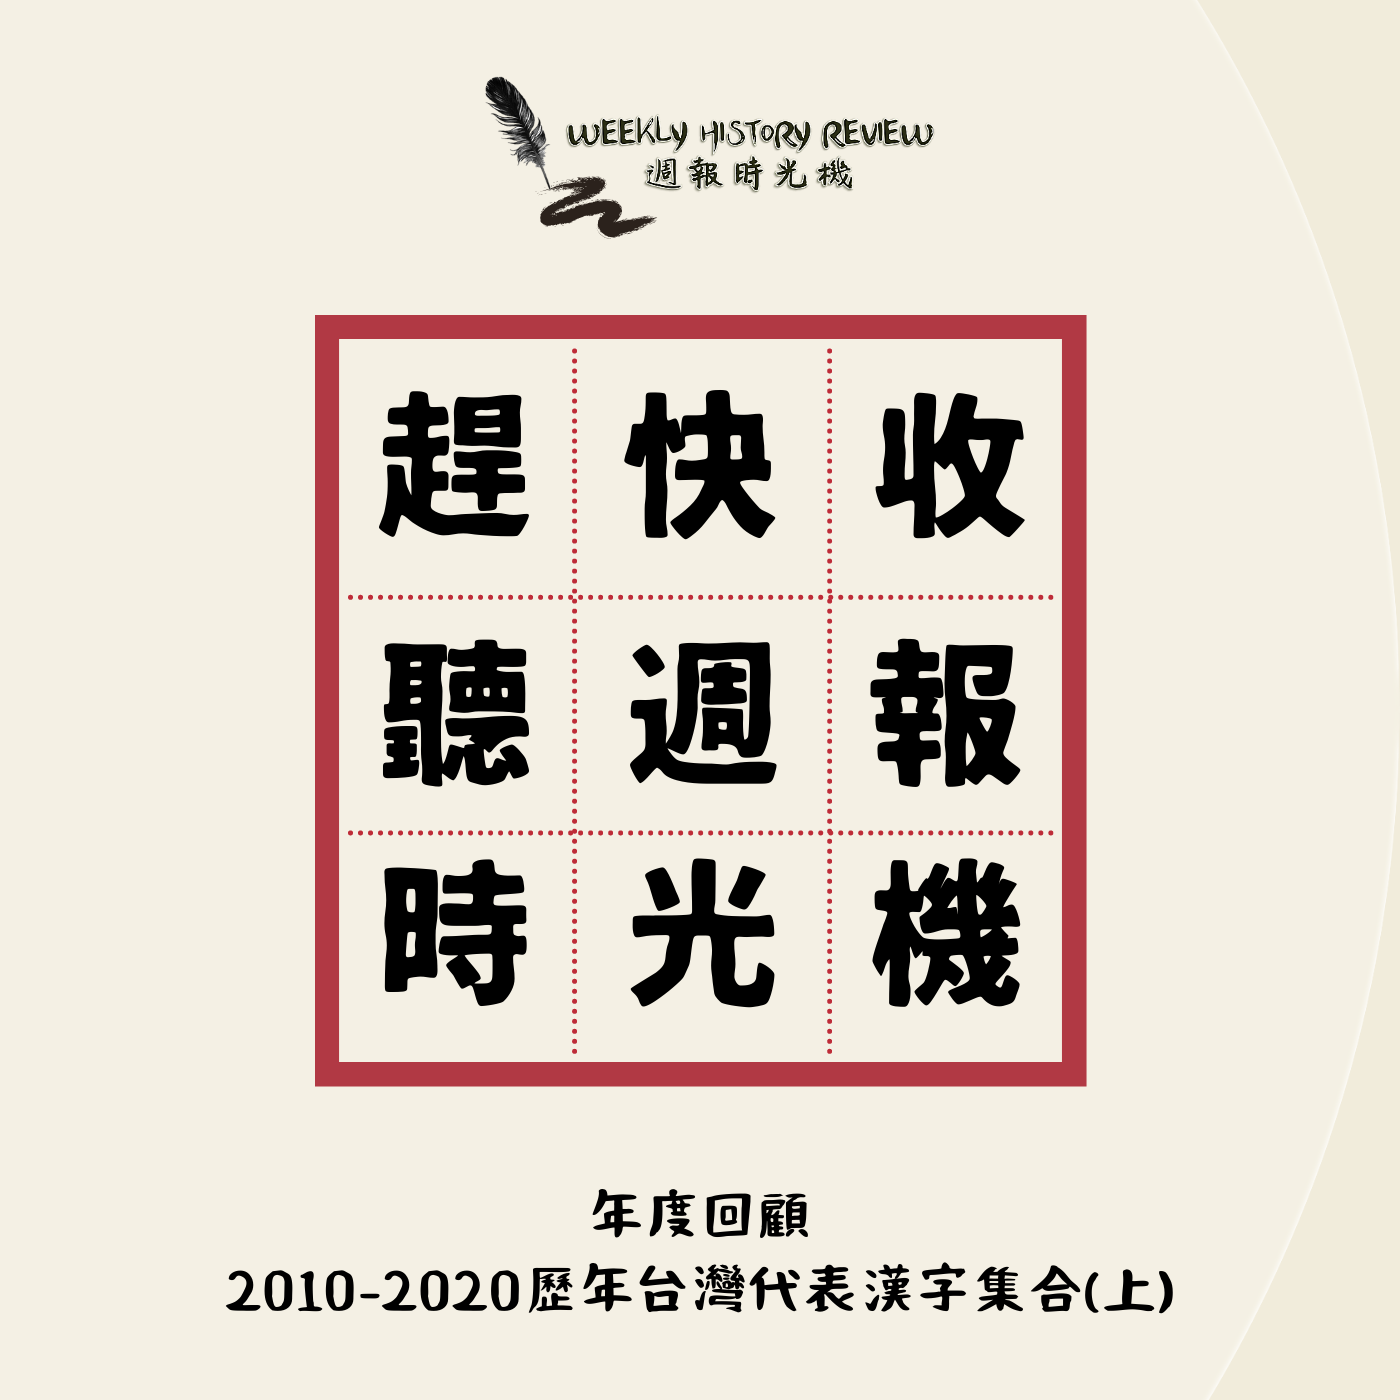 年度回顧》2010-2020歷年台灣代表漢字大集合(上)_EP23